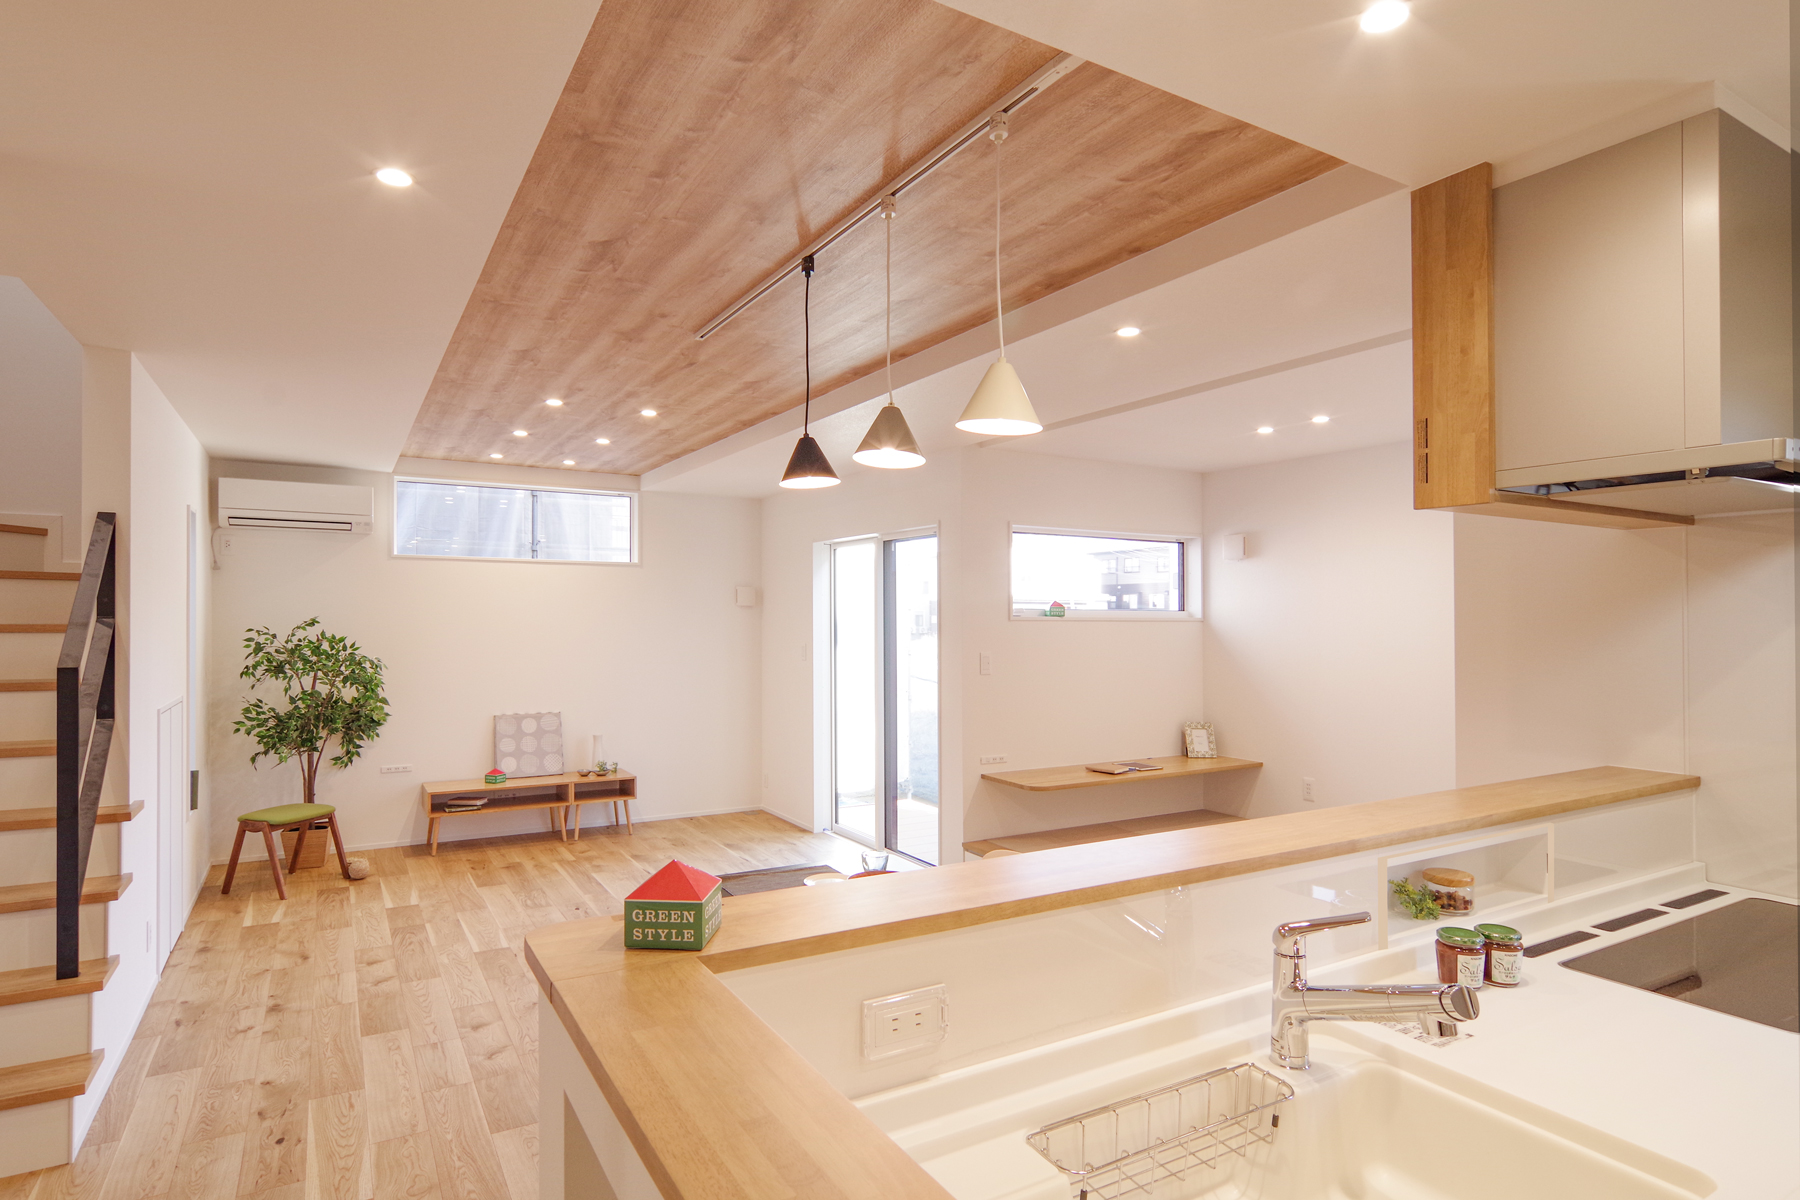 グリーンスタイル 長岡市 建築実例 リビング キッチン デザイン住宅